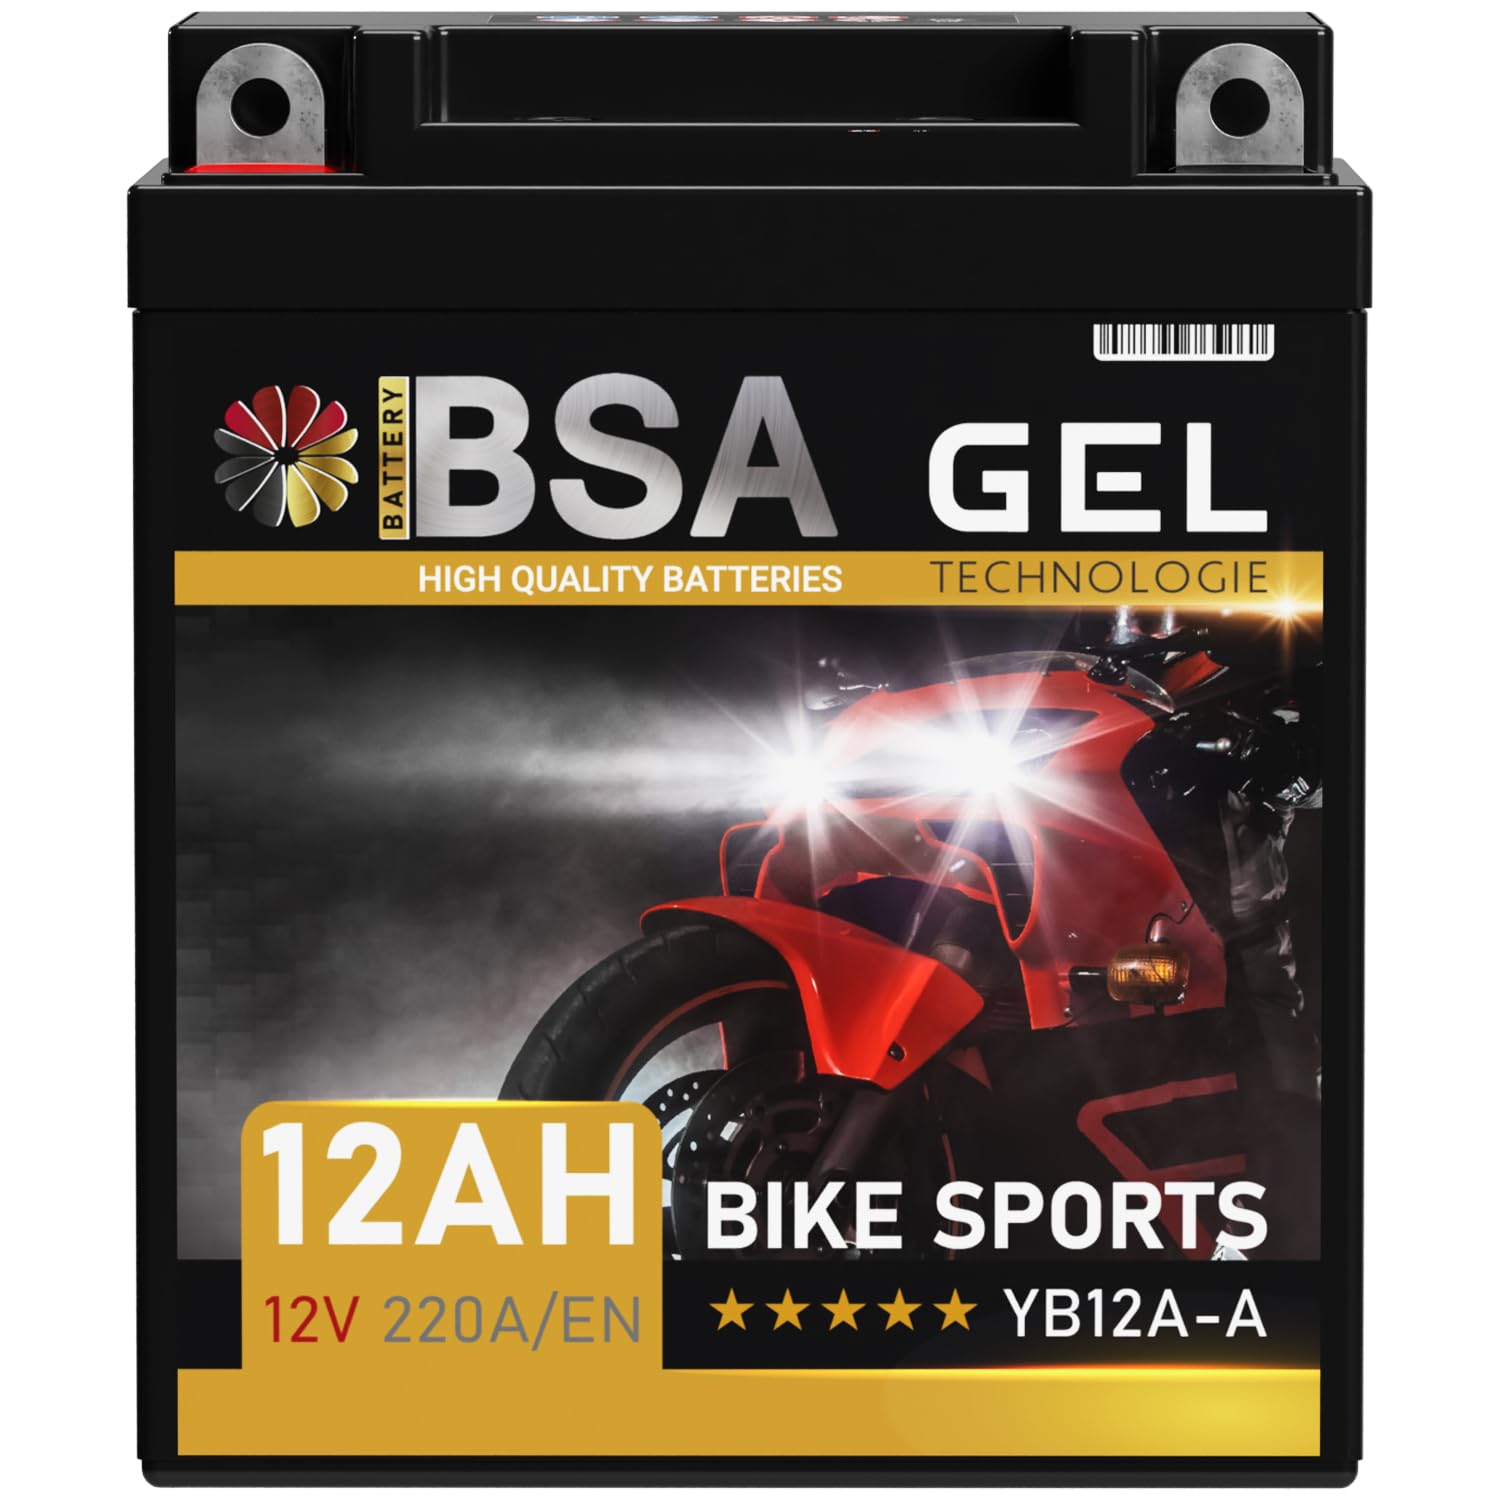 BSA YB12A-A GEL Roller Batterie 12V 12Ah 220A/EN Motorradbatterie doppelte Lebensdauer entspricht 51211 YB12A-B CB12A-A vorgeladen auslaufsicher wartungsfrei ersetzt 10Ah von BSA BATTERY HIGH QUALITY BATTERIES